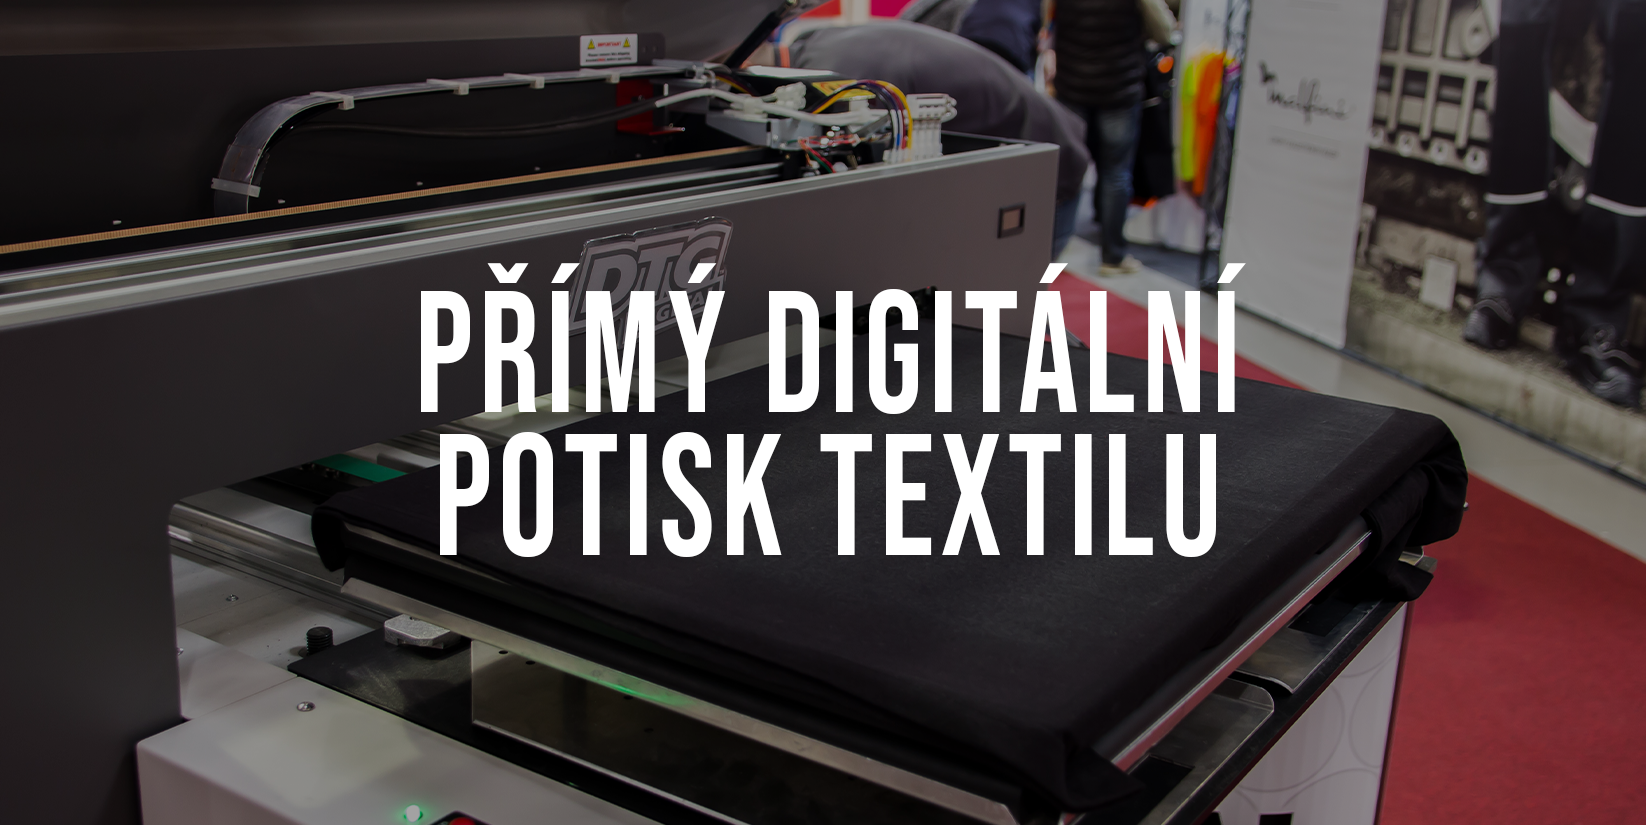 Přímý digitální potisk textilu je nejmodernější metodou současné doby